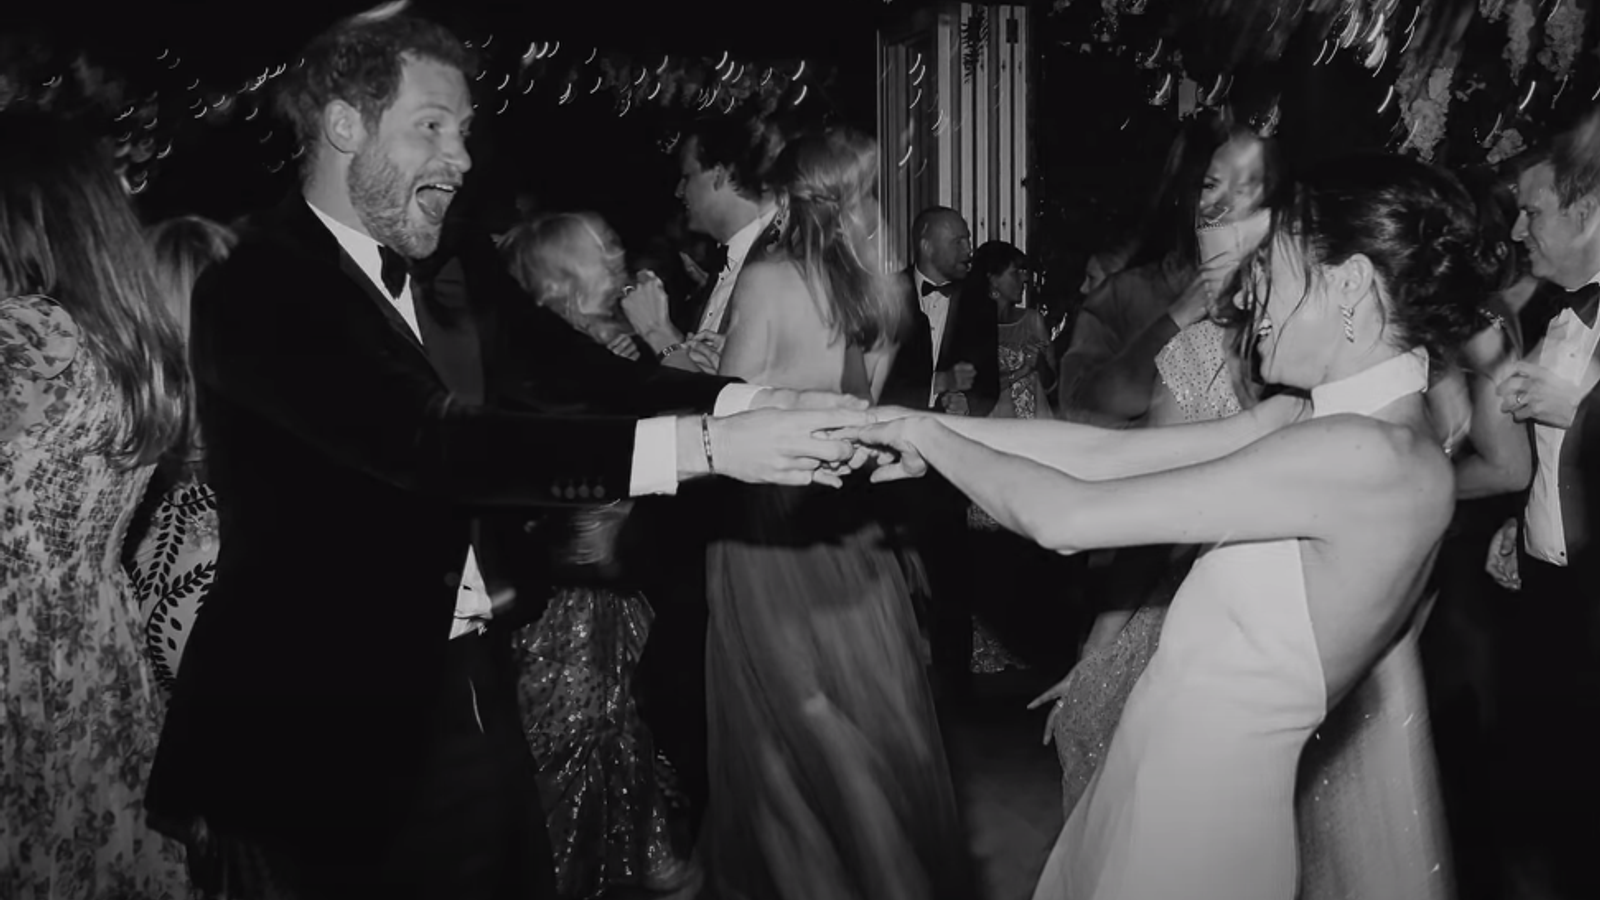 Принц Гарри и Меган вспоминают свой «игривый» первый танец на свадьбе в последнем клипе от Netflix |  Новости Великобритании